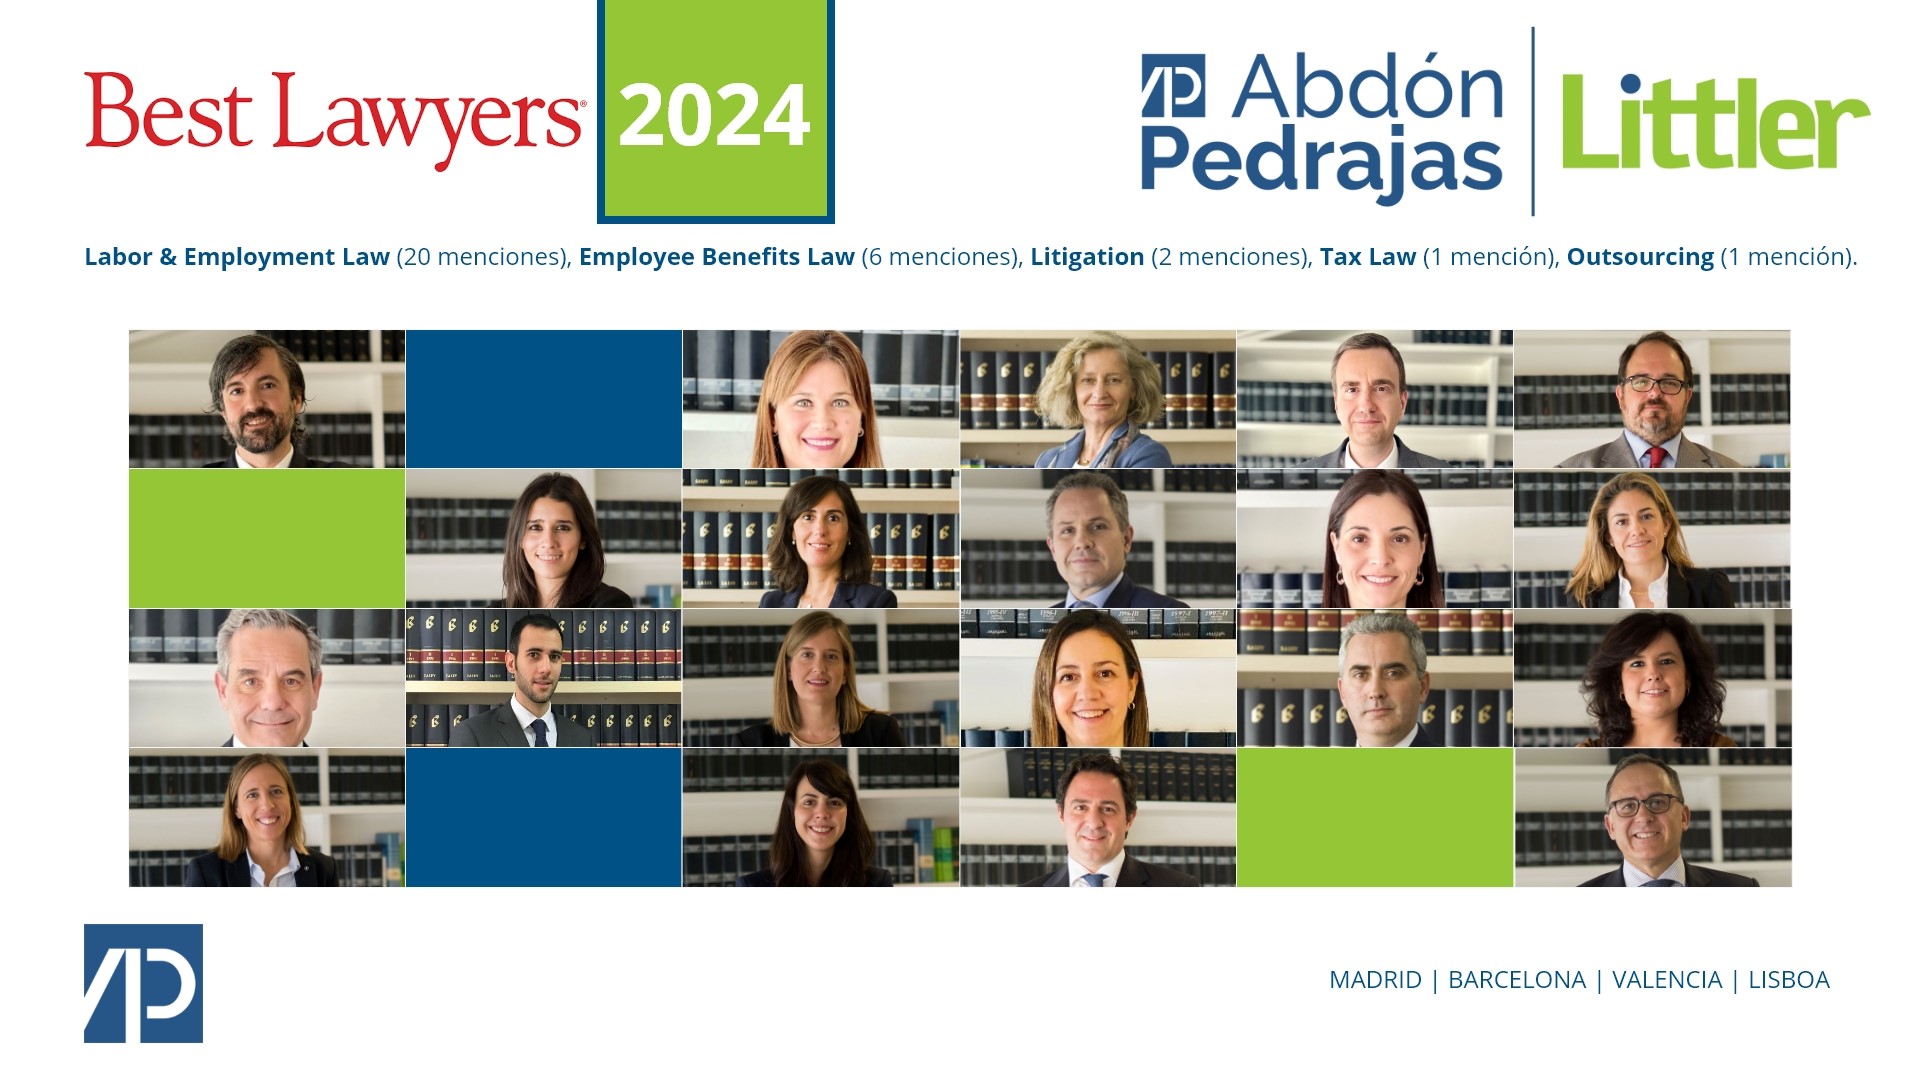 Best Lawyers reconoce  a 22 abogados de Abdón Pedrajas Littler, con 30 menciones individuales, como los mejores abogados de España en su edición 2024.